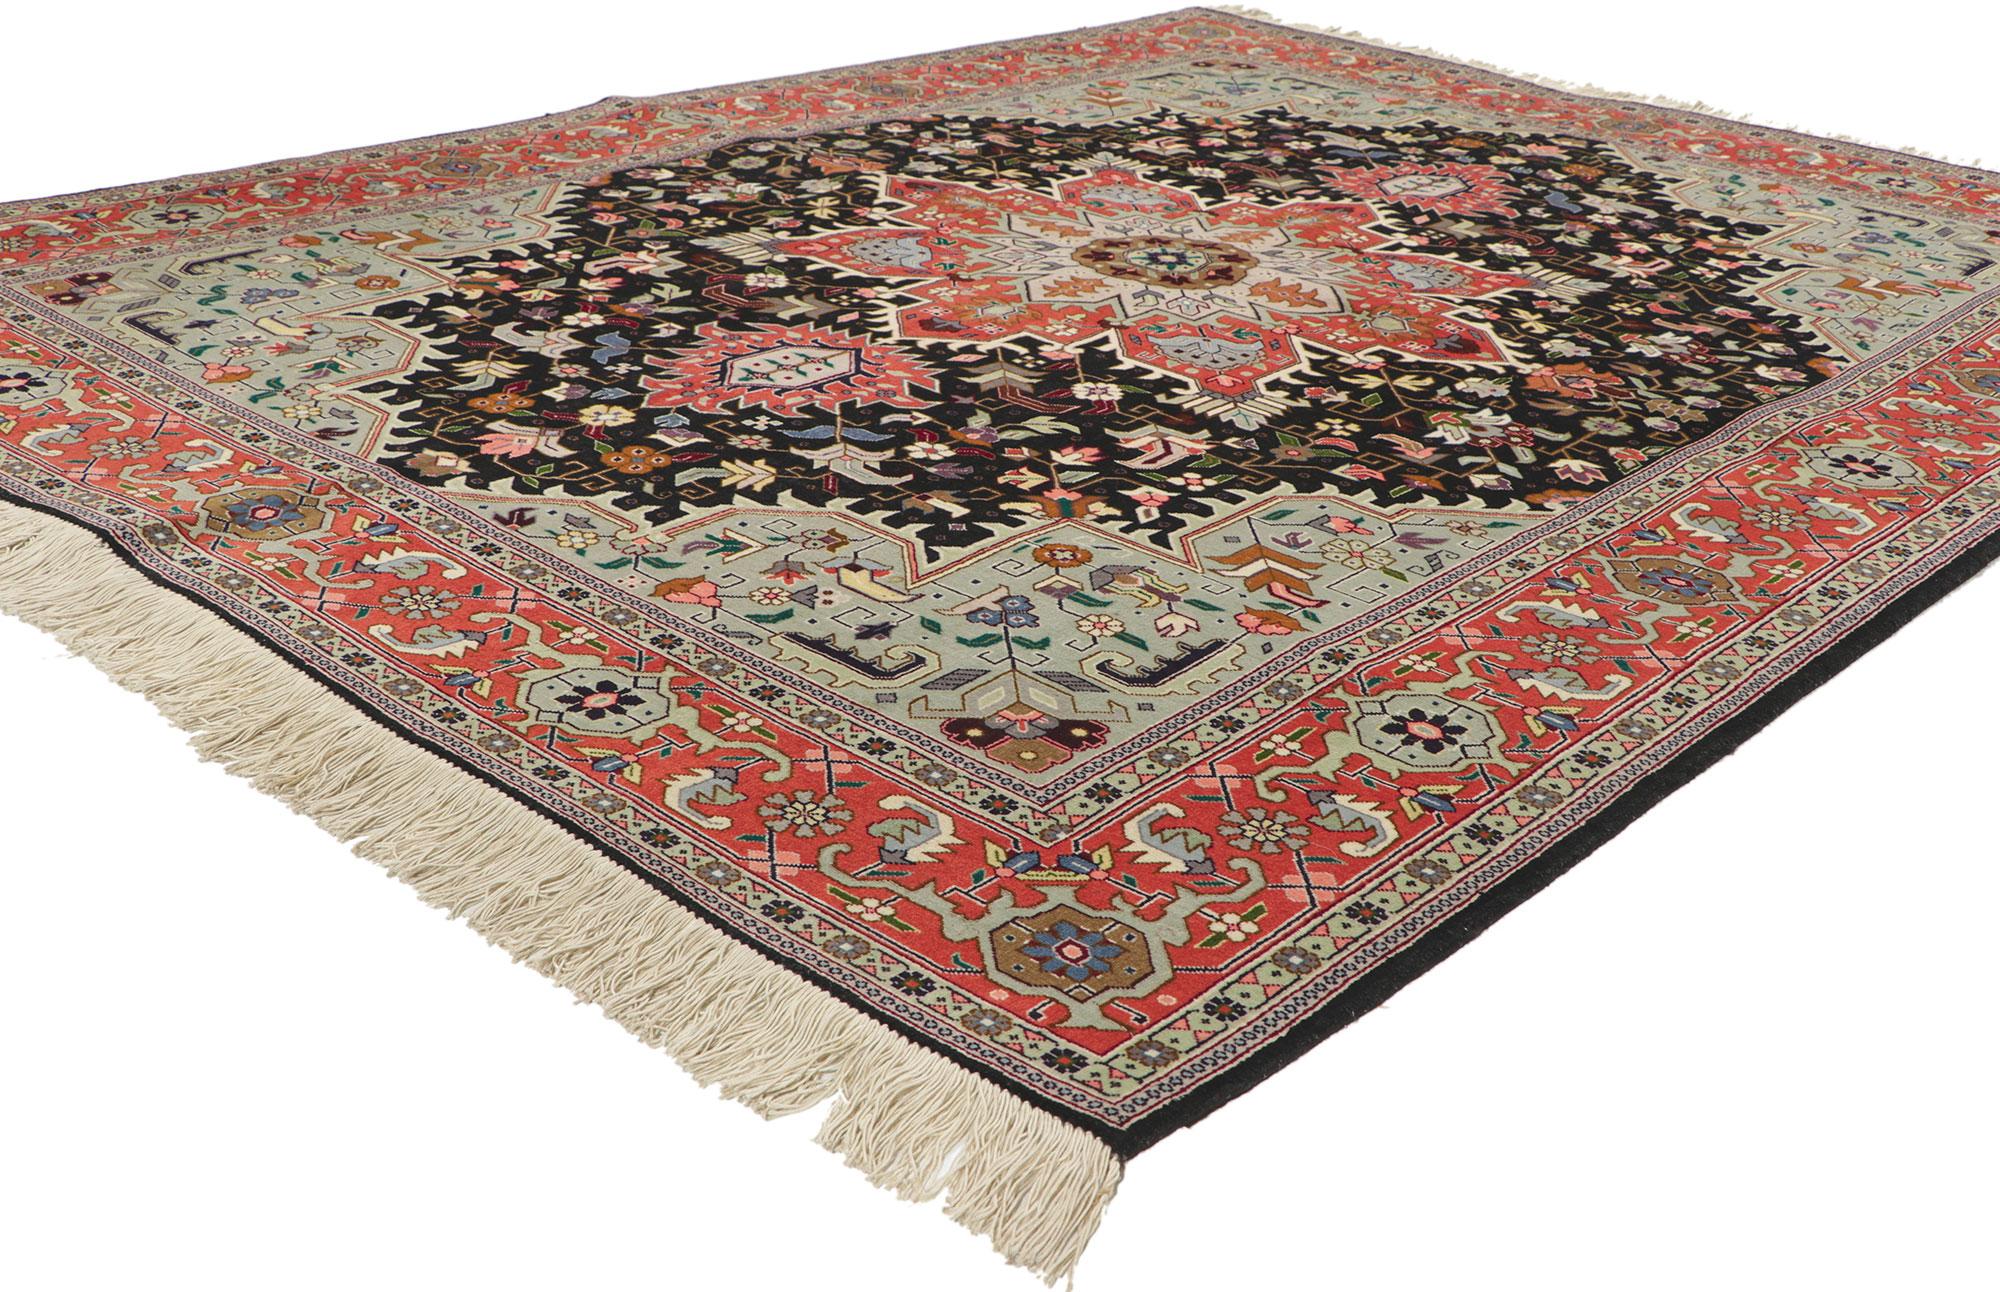 74651 Vintage Persian Tabriz Rug, 05'01 x 06'08. 
Dieser auffällige Teppich zeigt ein sternförmiges Zentralmedaillon mit einem geometrischen Blumenmotiv in Stahl, Lachs, Lavendel und Sage auf einem kontrastierenden Feld aus Mitternacht, das von